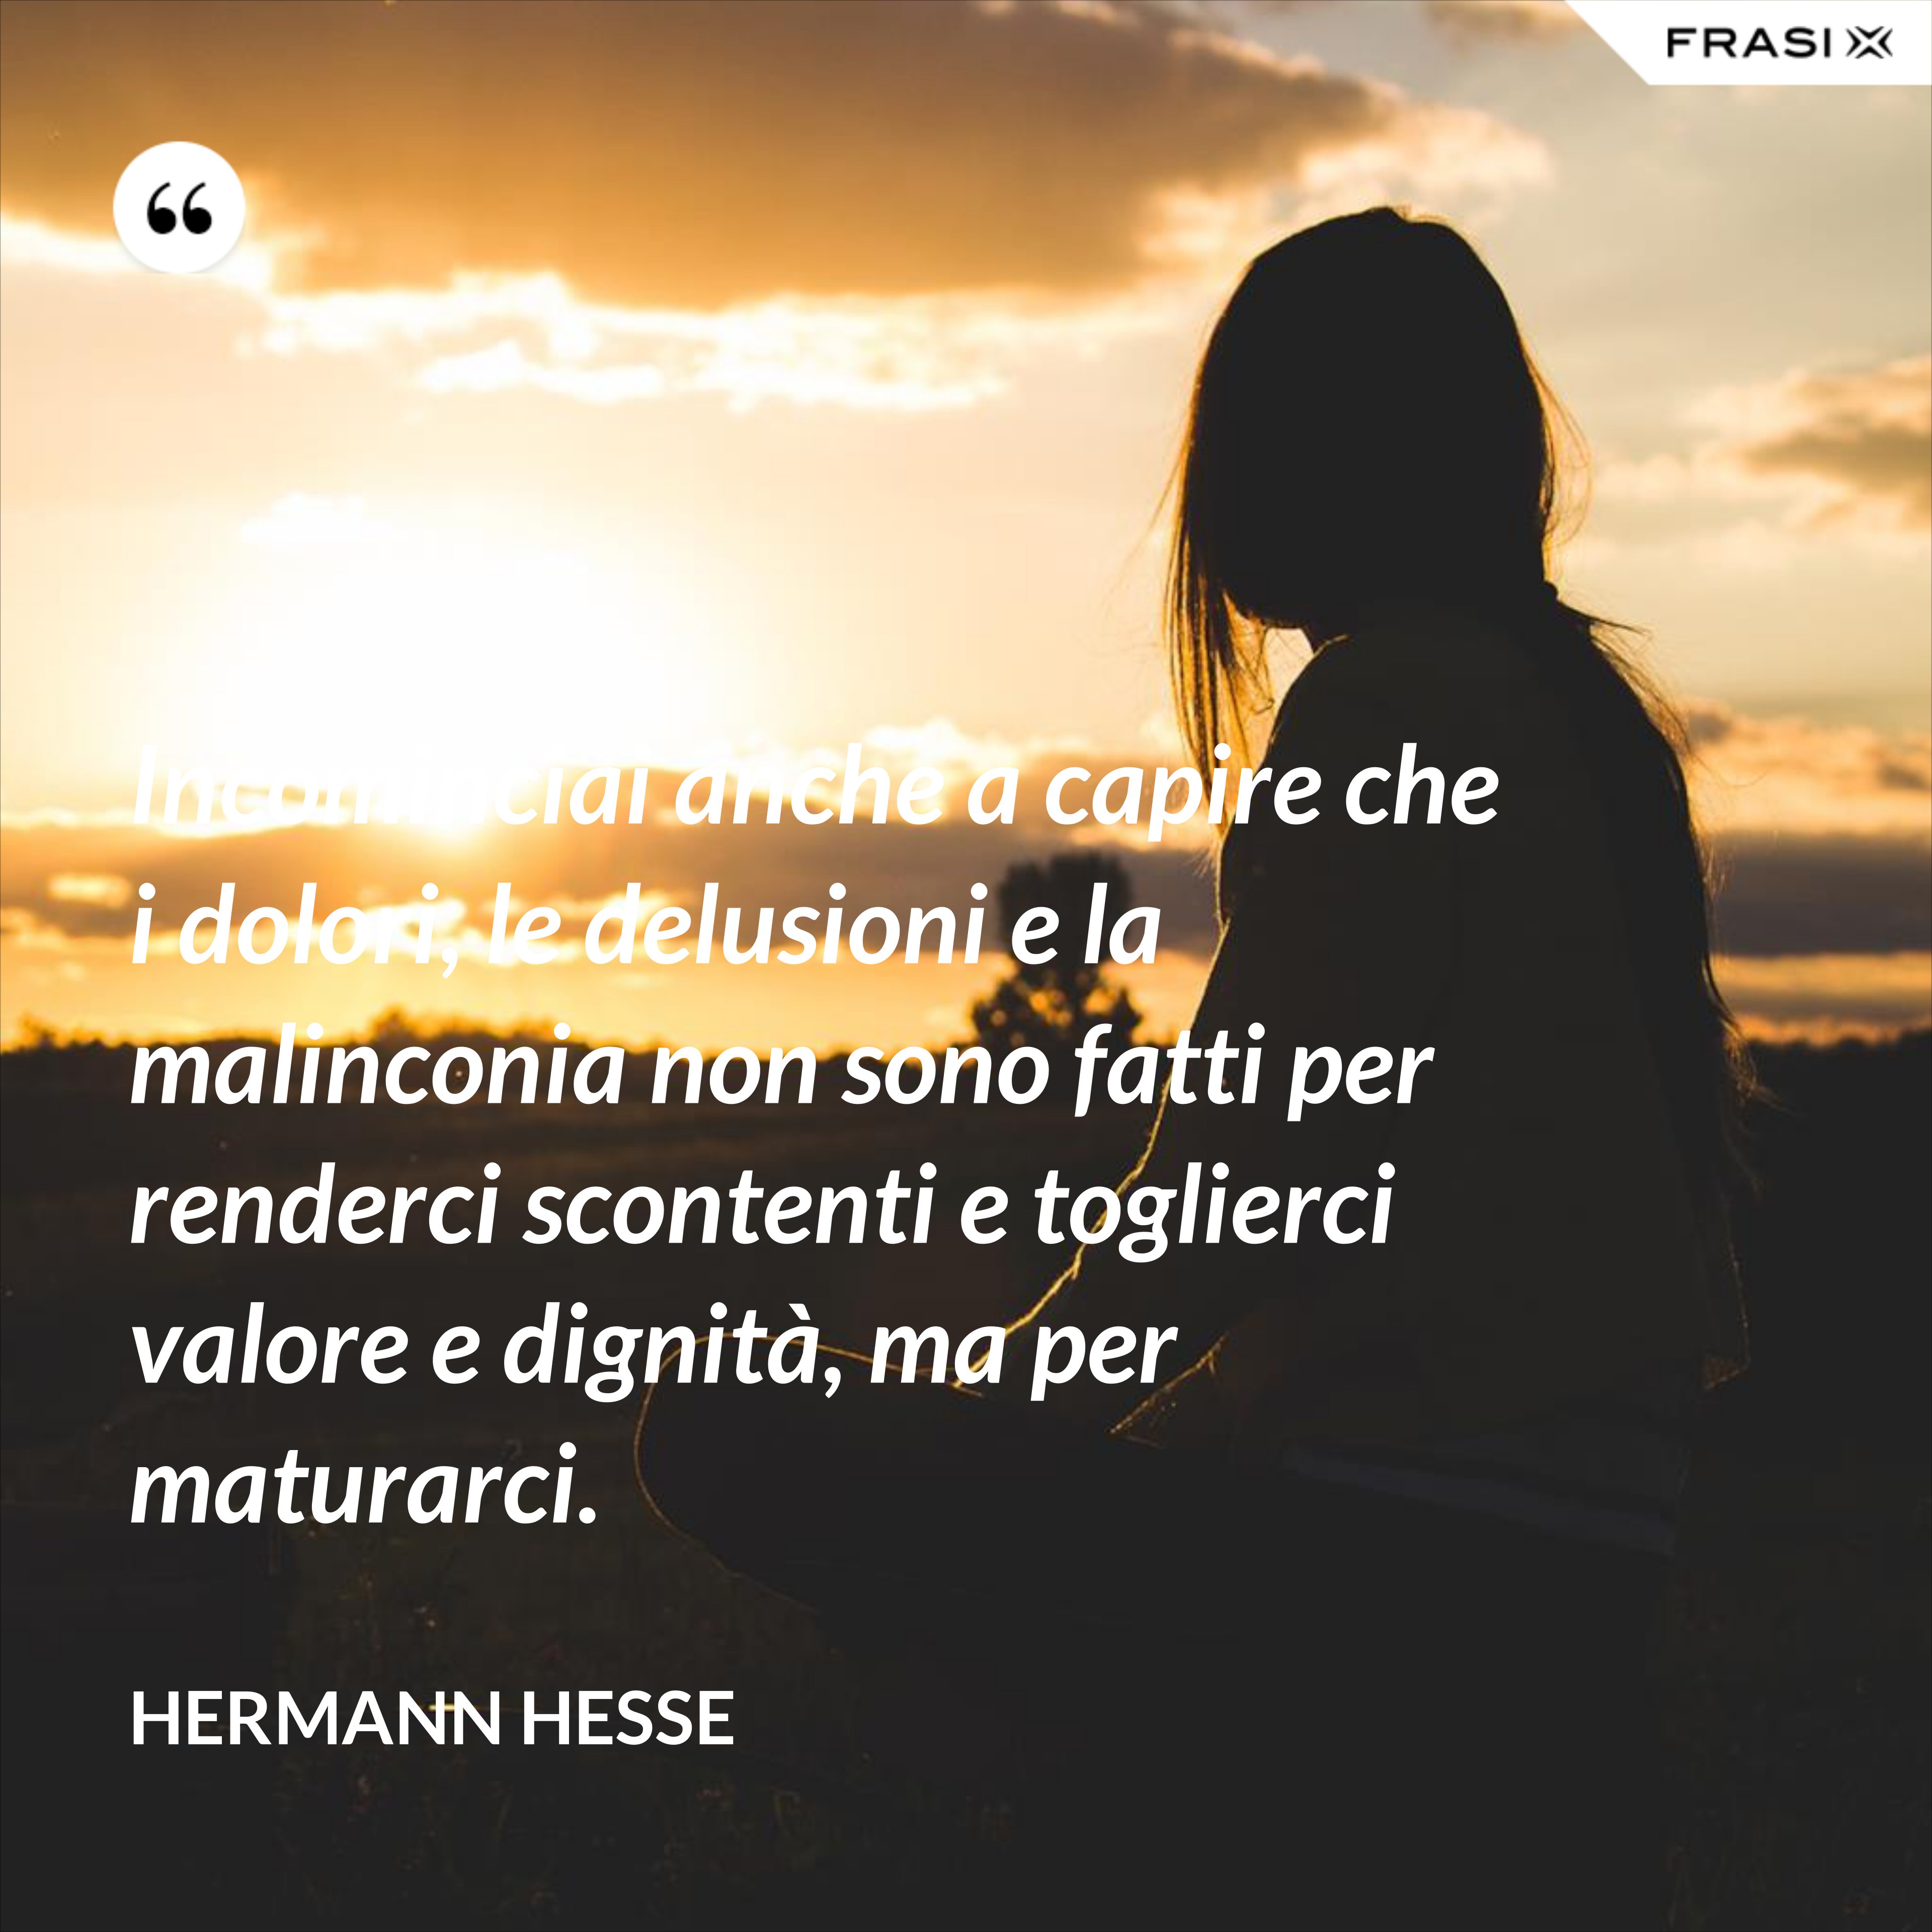 Incominciai anche a capire che i dolori, le delusioni e la malinconia non sono fatti per renderci scontenti e toglierci valore e dignità, ma per maturarci. - Hermann Hesse